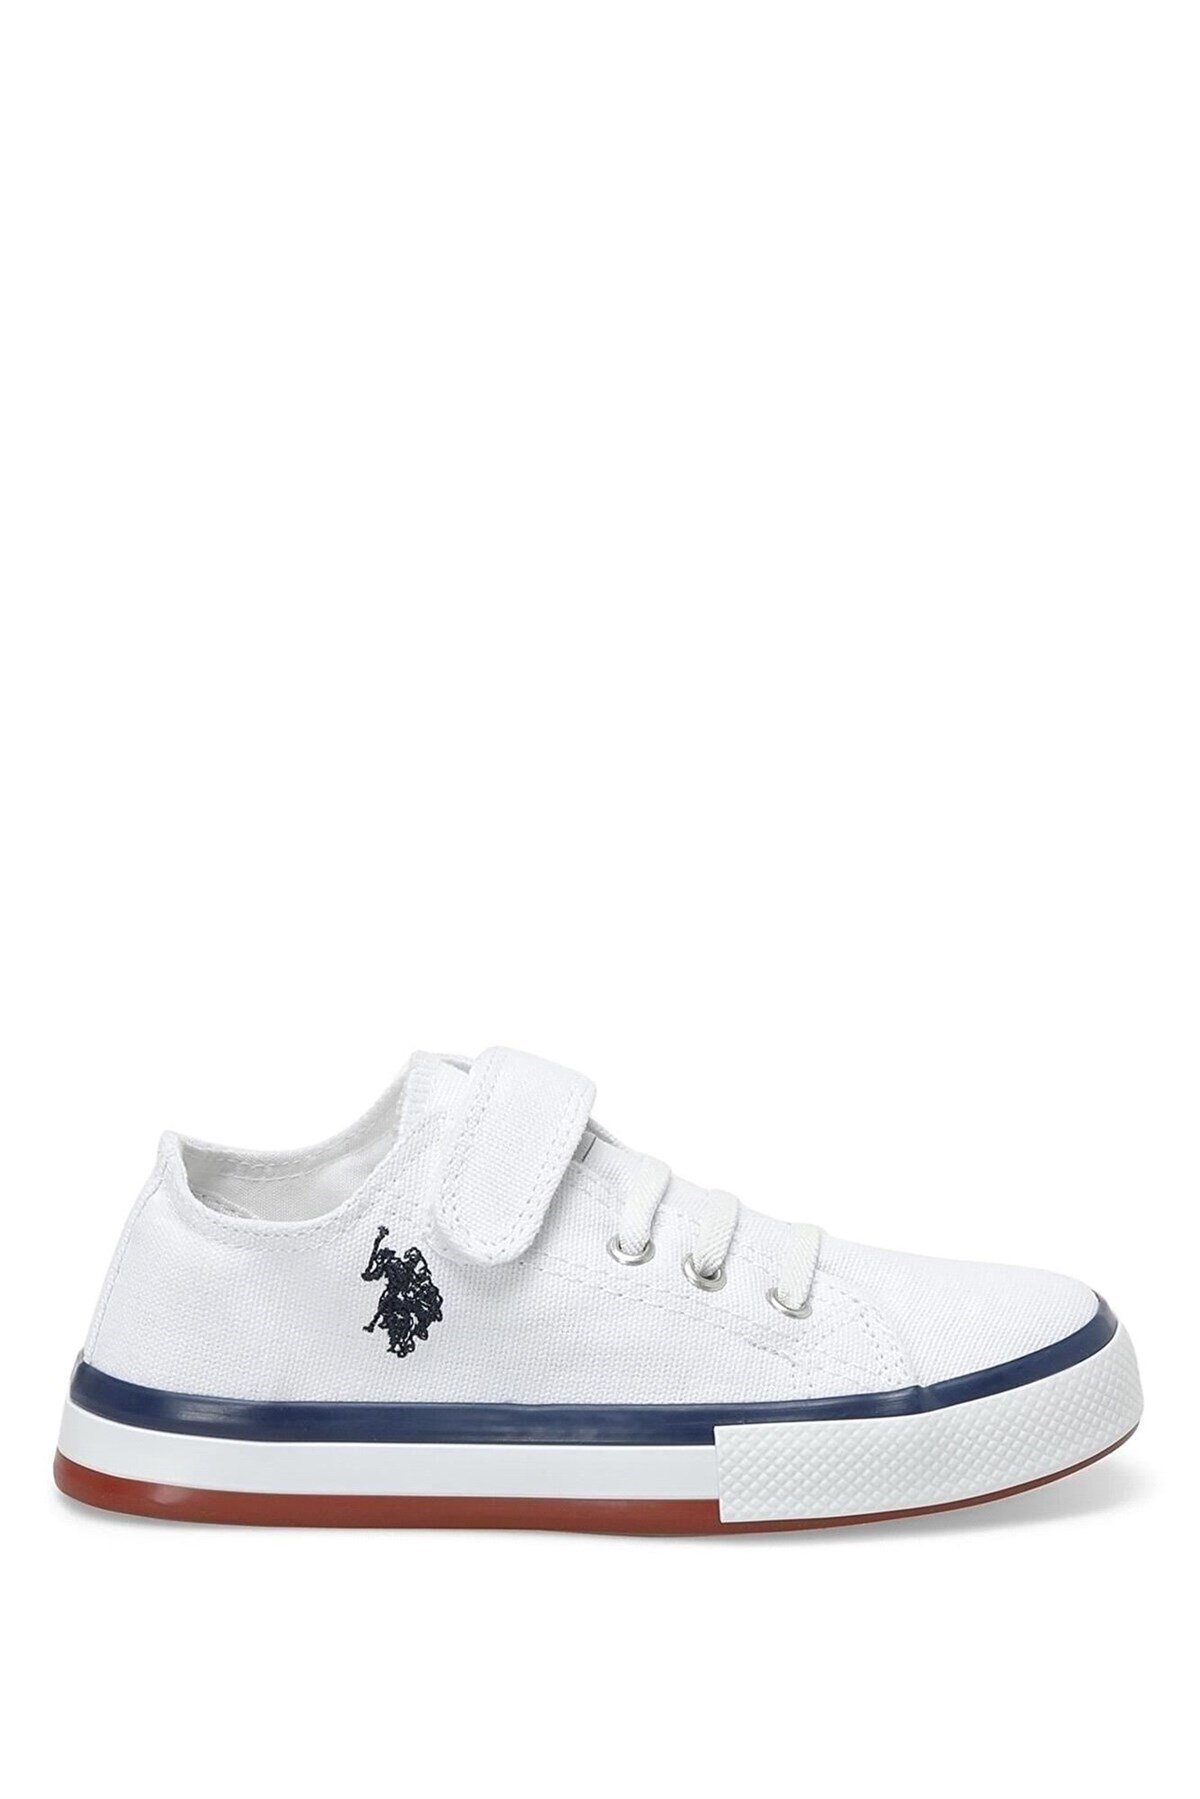 U.S. Polo Assn. Longo Çocuk Bez Spor Ayakkabı Beyaz 101110537